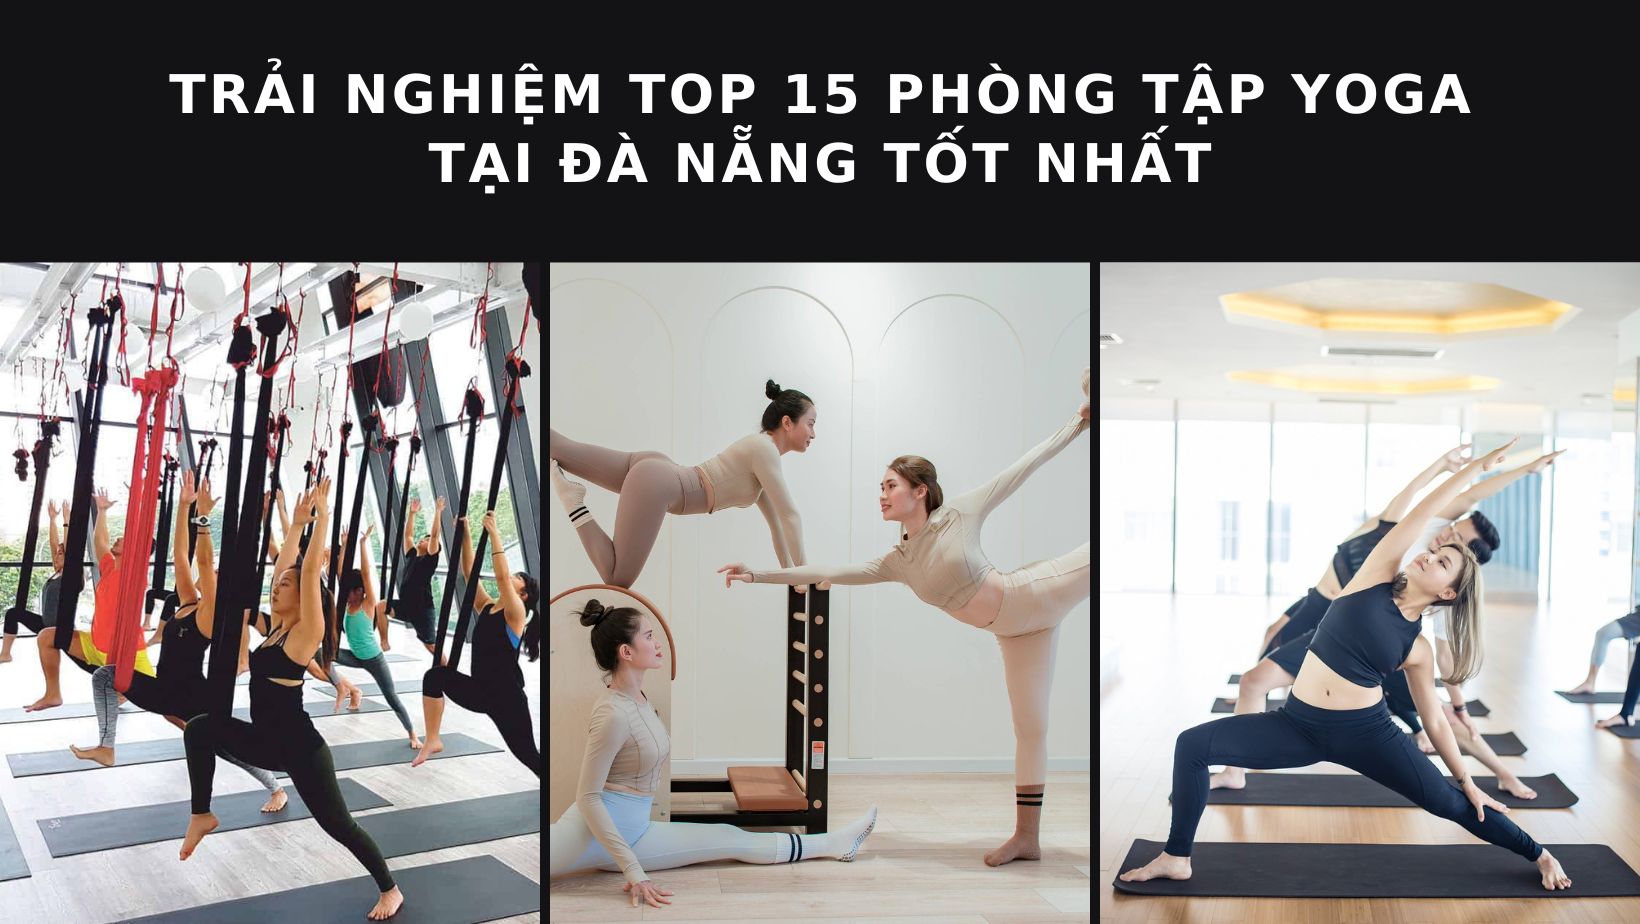 Cửa hàng bán thảm tập yoga Đà Nẵng: Top 11 cửa hàng bán thảm tập giá rẻ – chất lượng